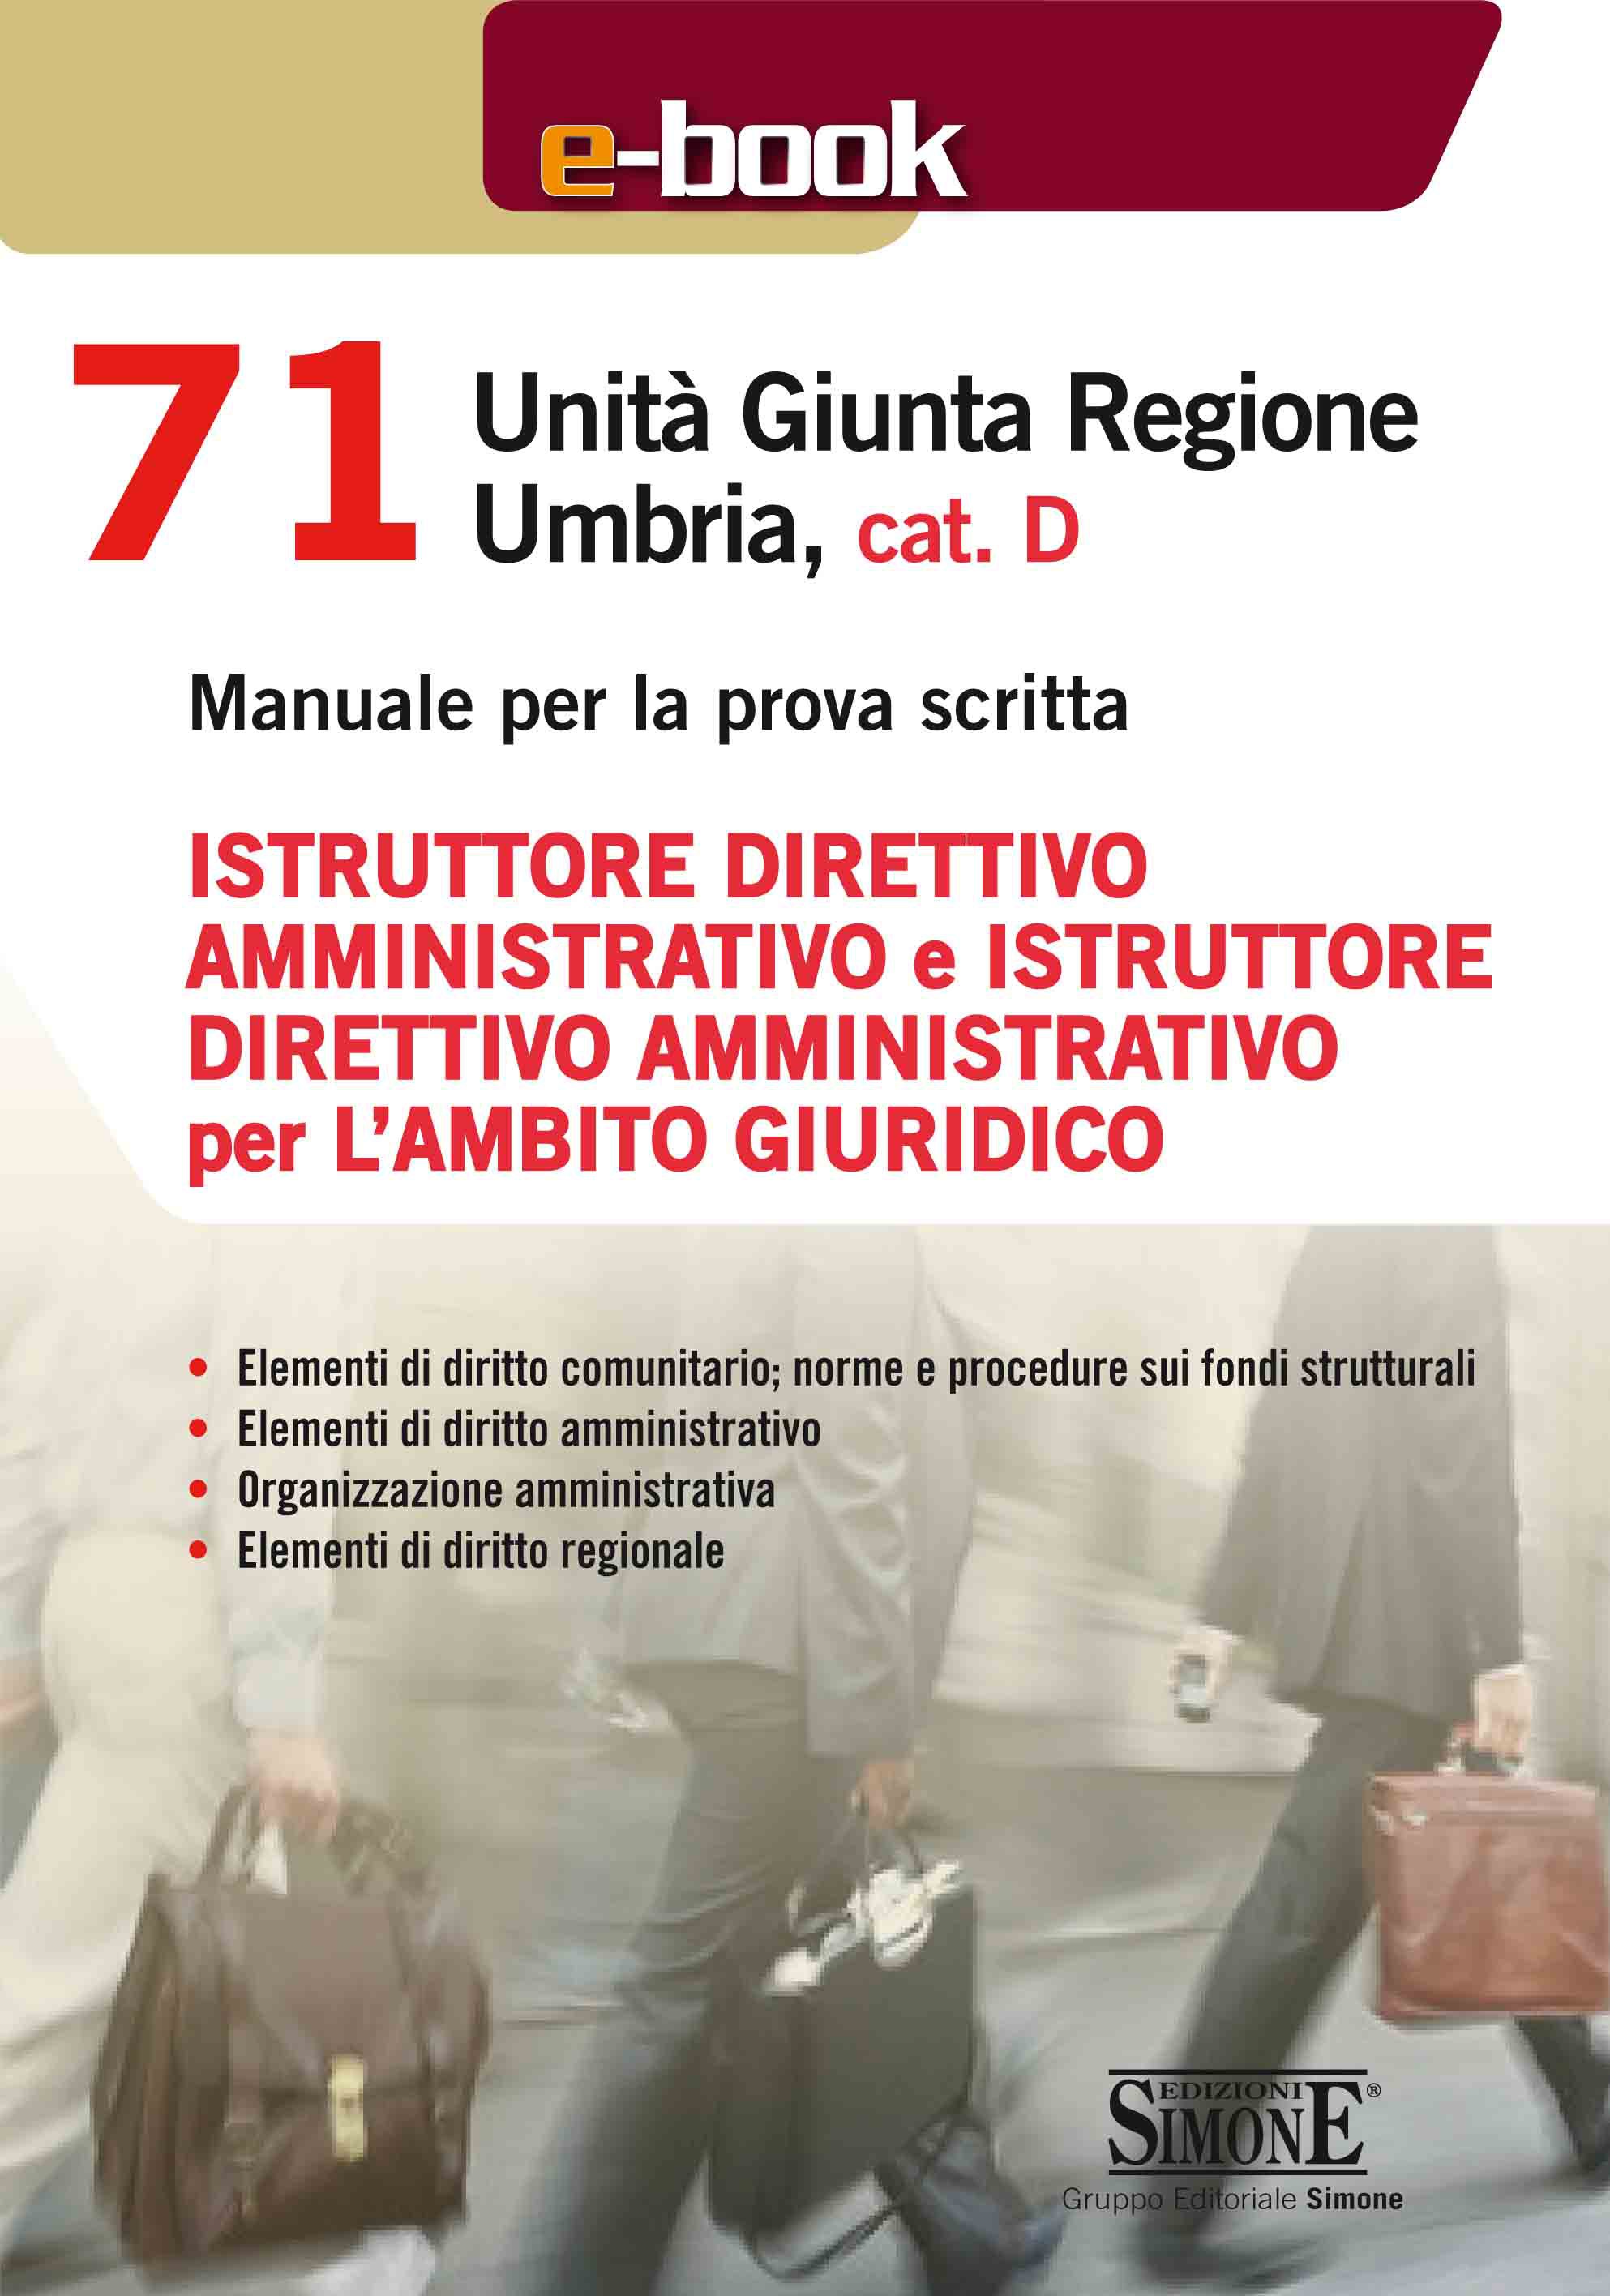 71 Unità Giunta Regionale Umbria, cat. D - Istruttore direttivo amministrativo e Istruttore direttivo amministrativo per l'ambit - Librerie.coop